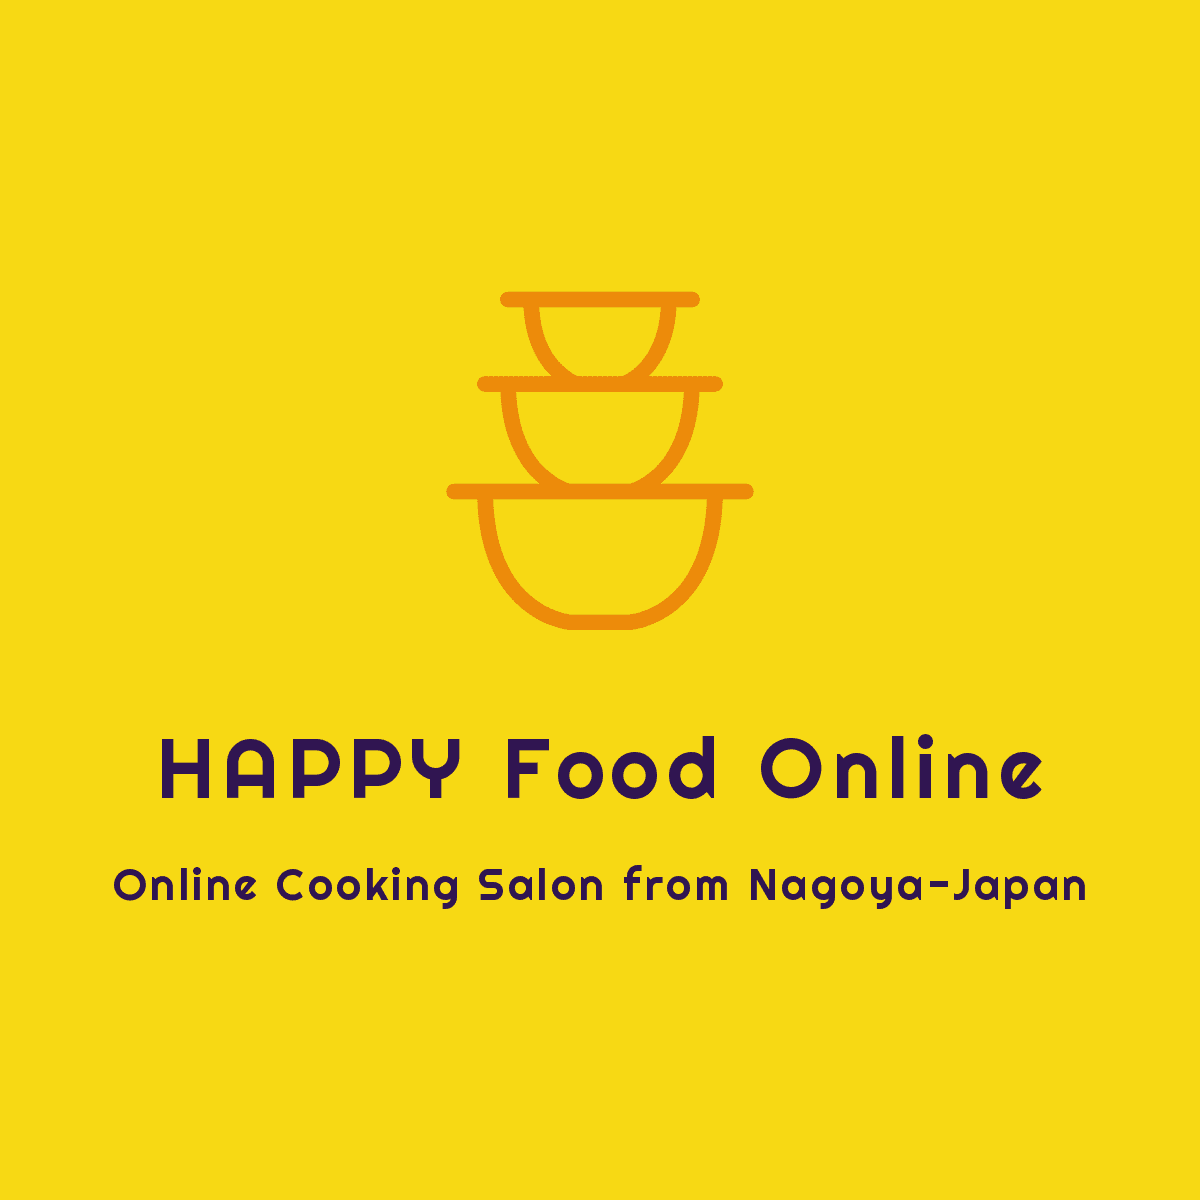 名古屋発、オンライン料理教室生配信
「HAPPY Food Online」を開始